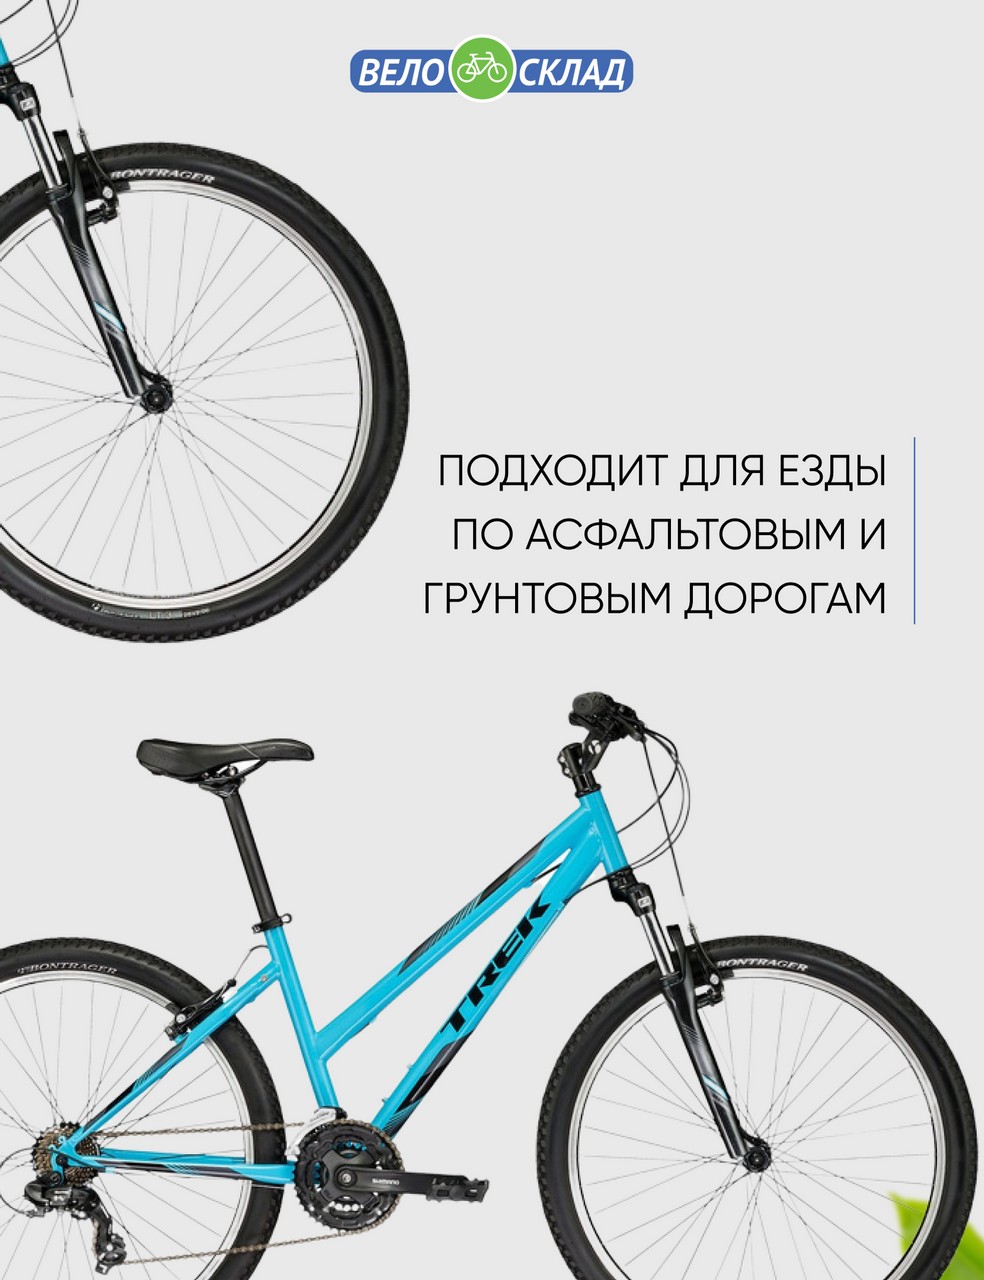 Женский велосипед Trek 820 WSD, год 2022, цвет Синий, ростовка 19.5